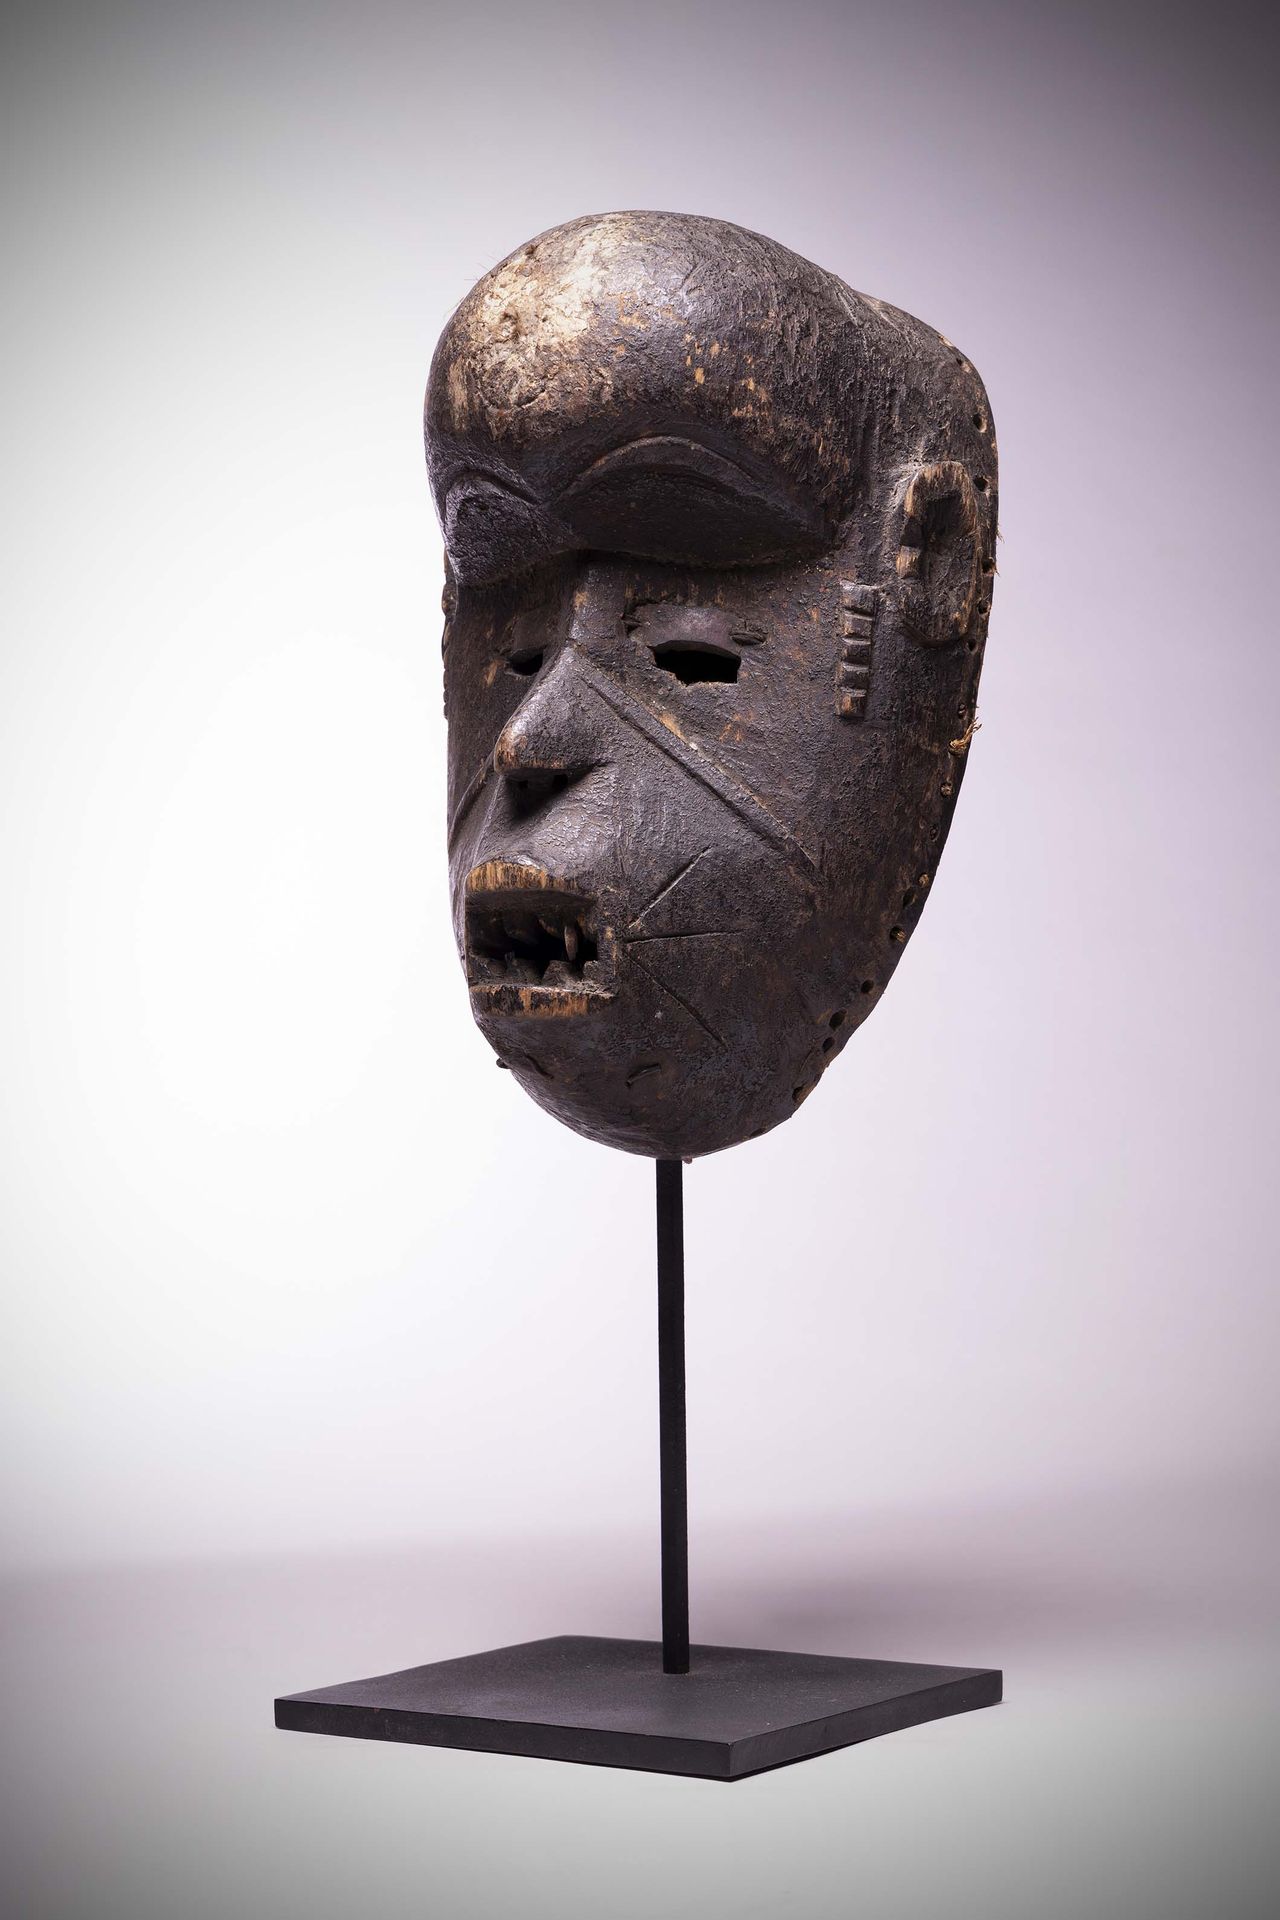 Null Idoma

Igala

(Nigeria) Maschera molto antica con fronte arrotondata del ti&hellip;